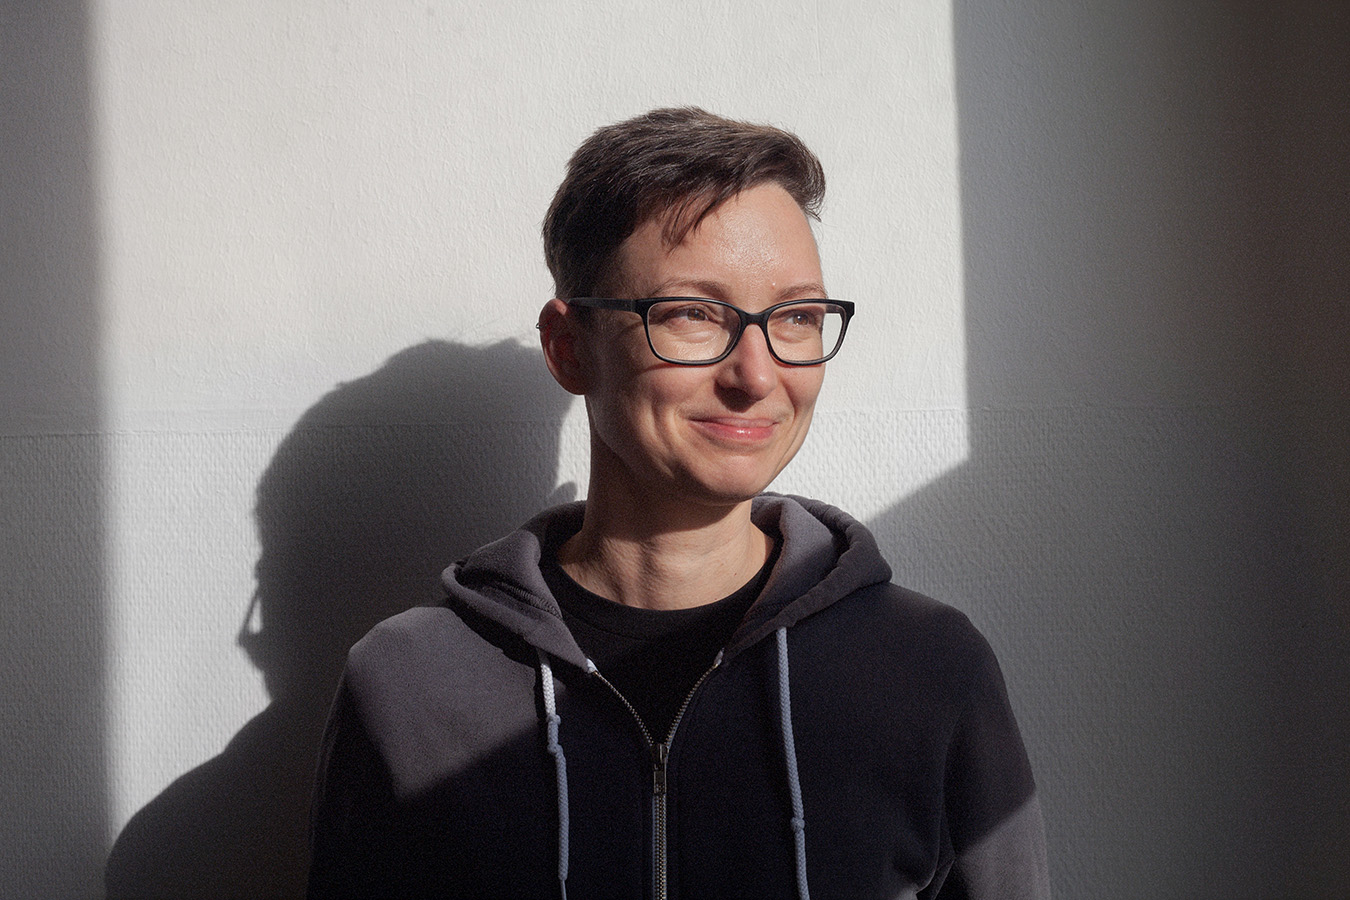 Porträtbild von Bettina Enzenhofer. Bettina hat kurze braune Haare, trägt eine Brille und einen grauen Kaputzenpullover und lächelt